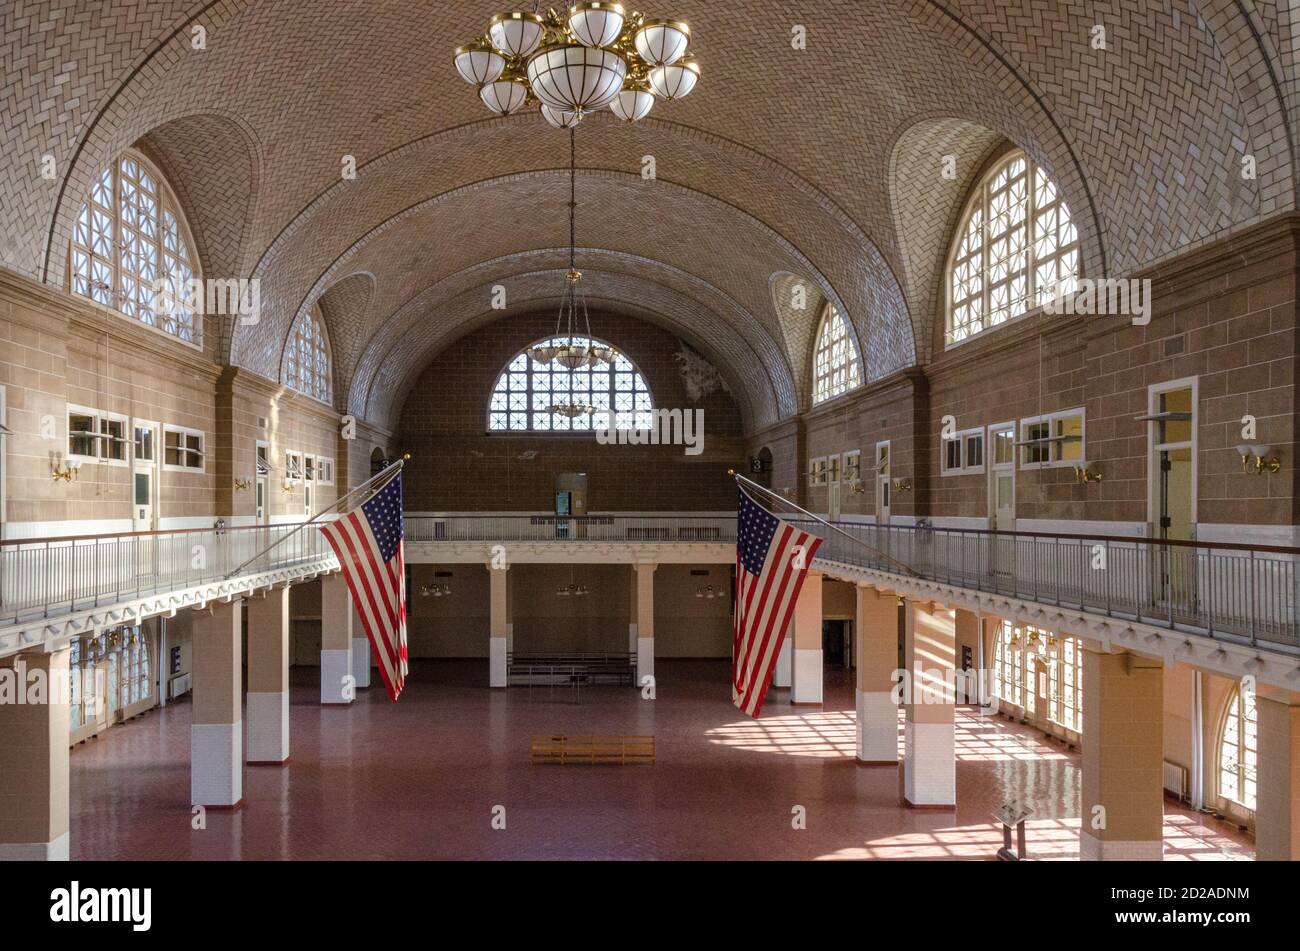 Ellis Island, NY, 1/31/13 -- Ellis Island, che ospita il Museo dell'immigrazione, è stata pesantemente danneggiata dall'uragano Sandy. Foto di Liz Roll Foto Stock